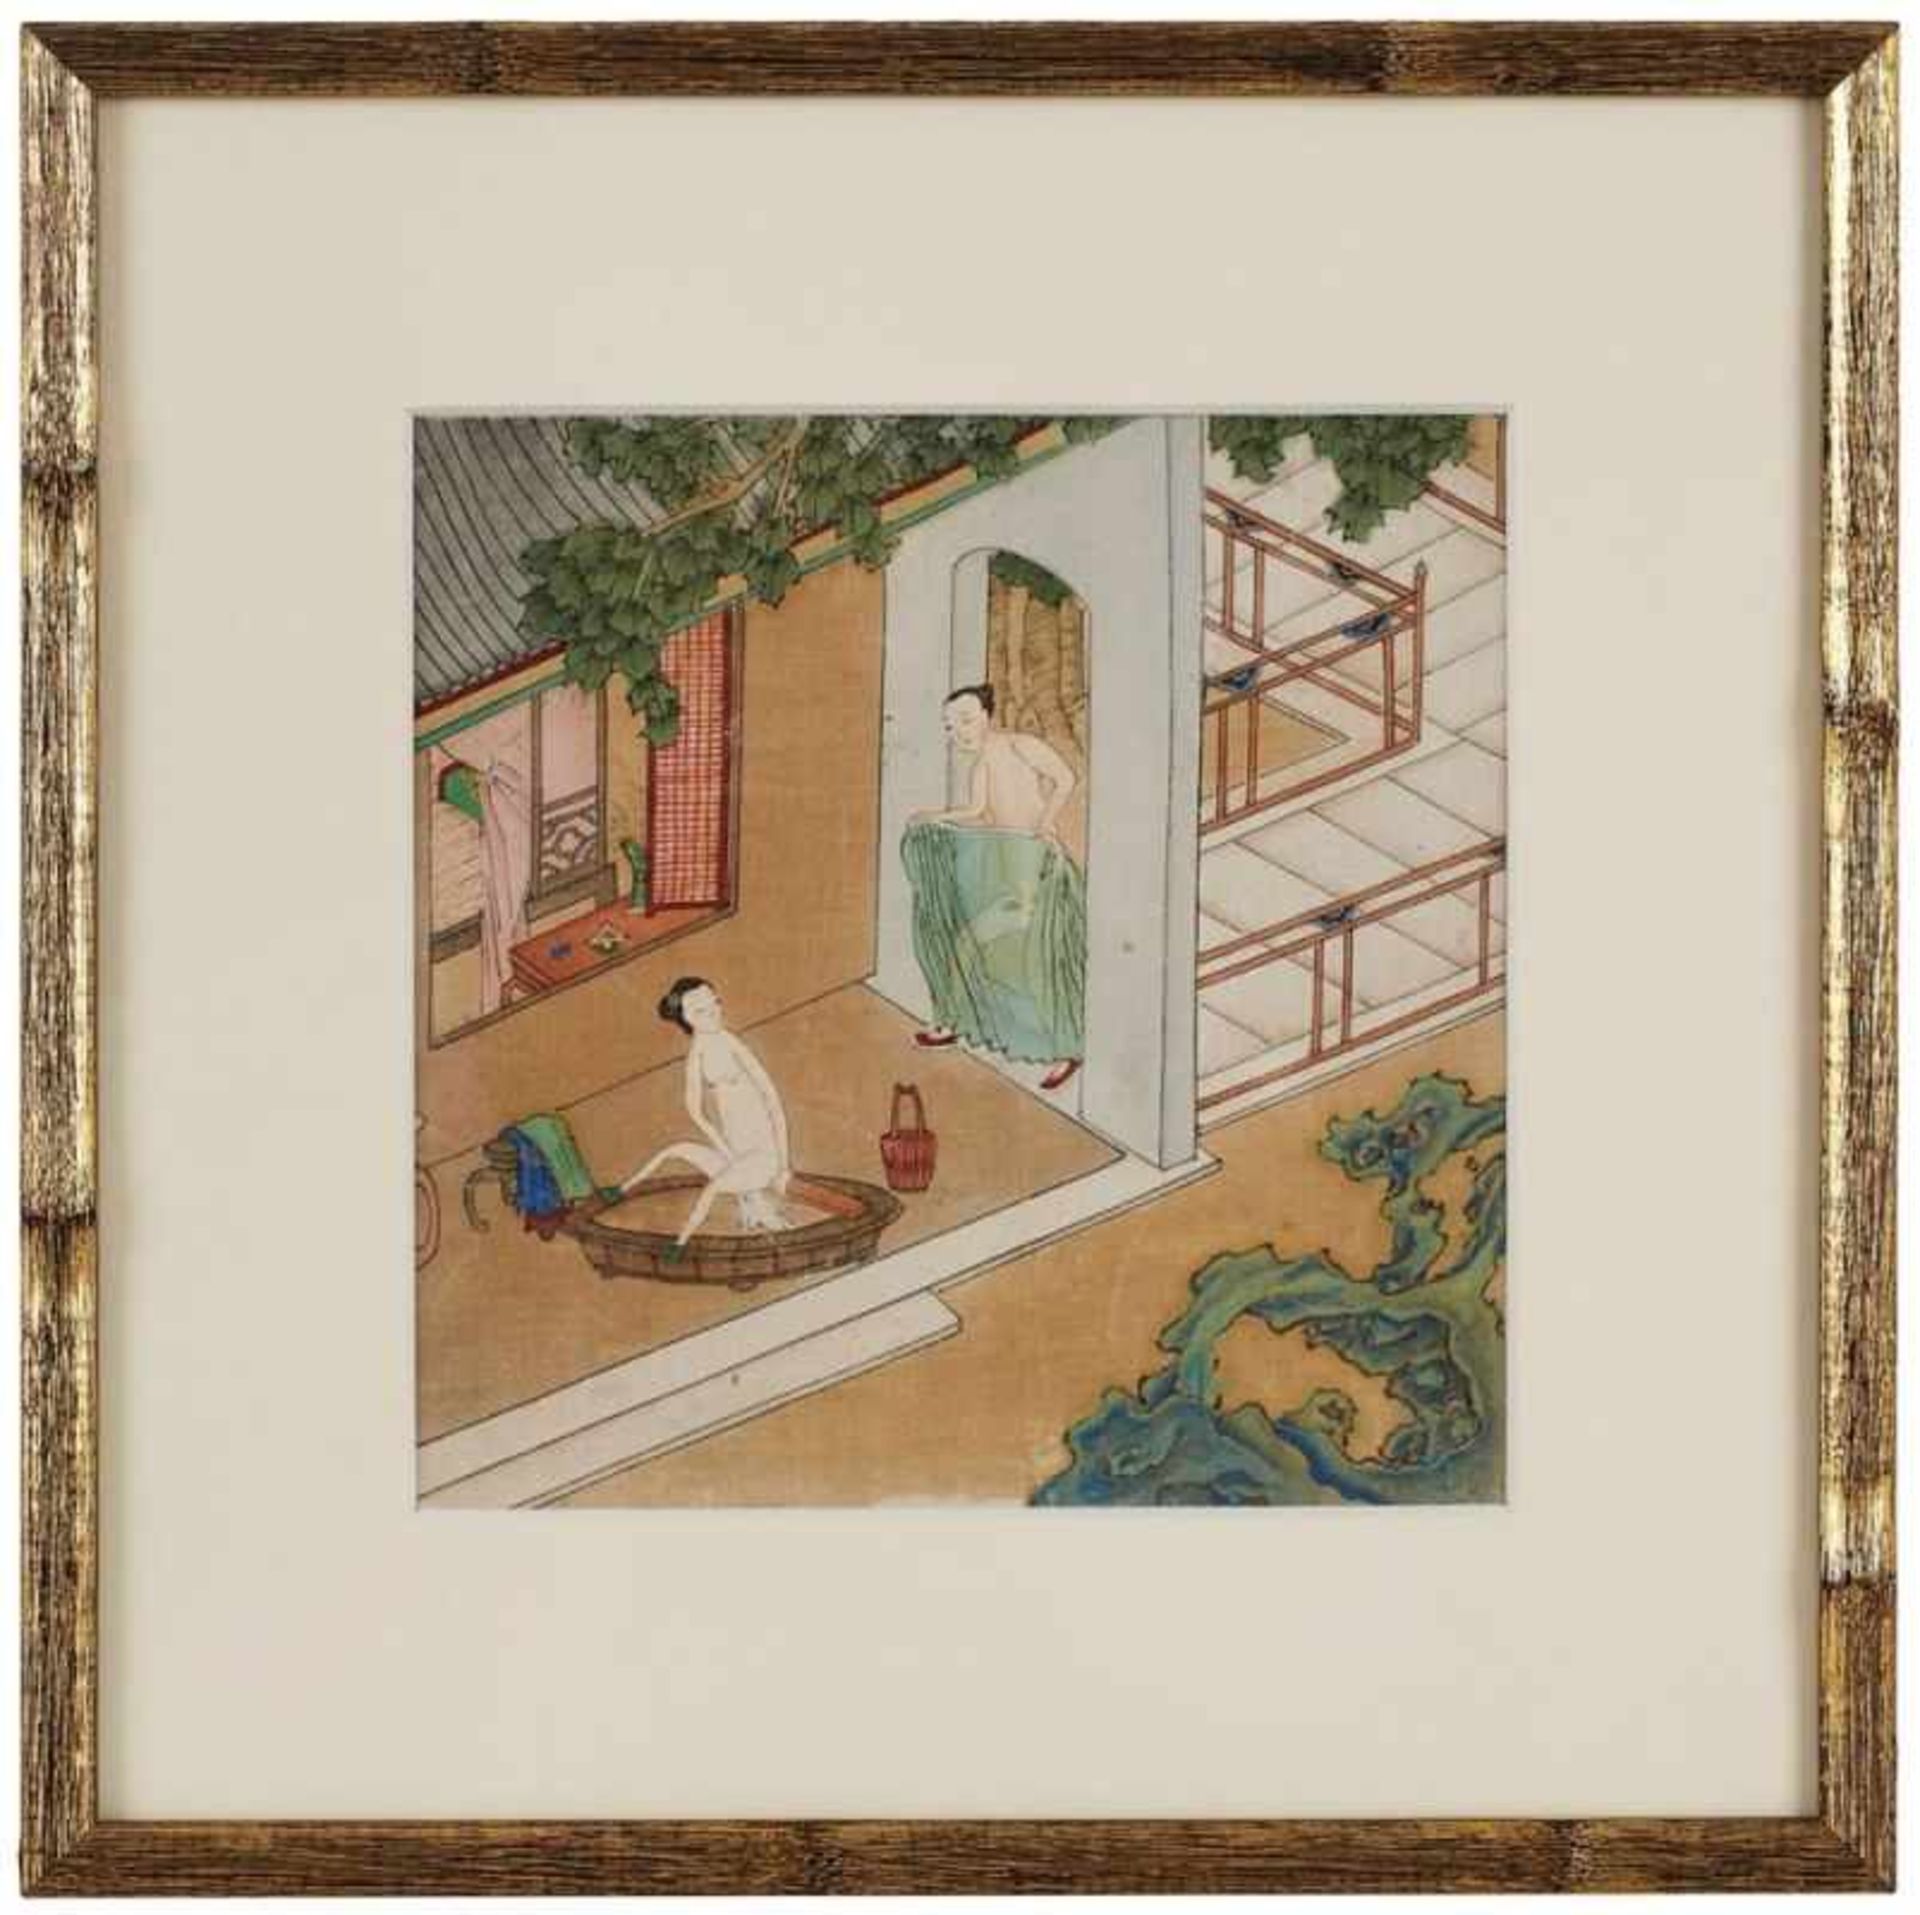 2 Seidenmalereien Japan wohl 19. Jh."Shunga" je 18,3 x 18,3 cm (PP- Ausschnitt) - Bild 4 aus 11